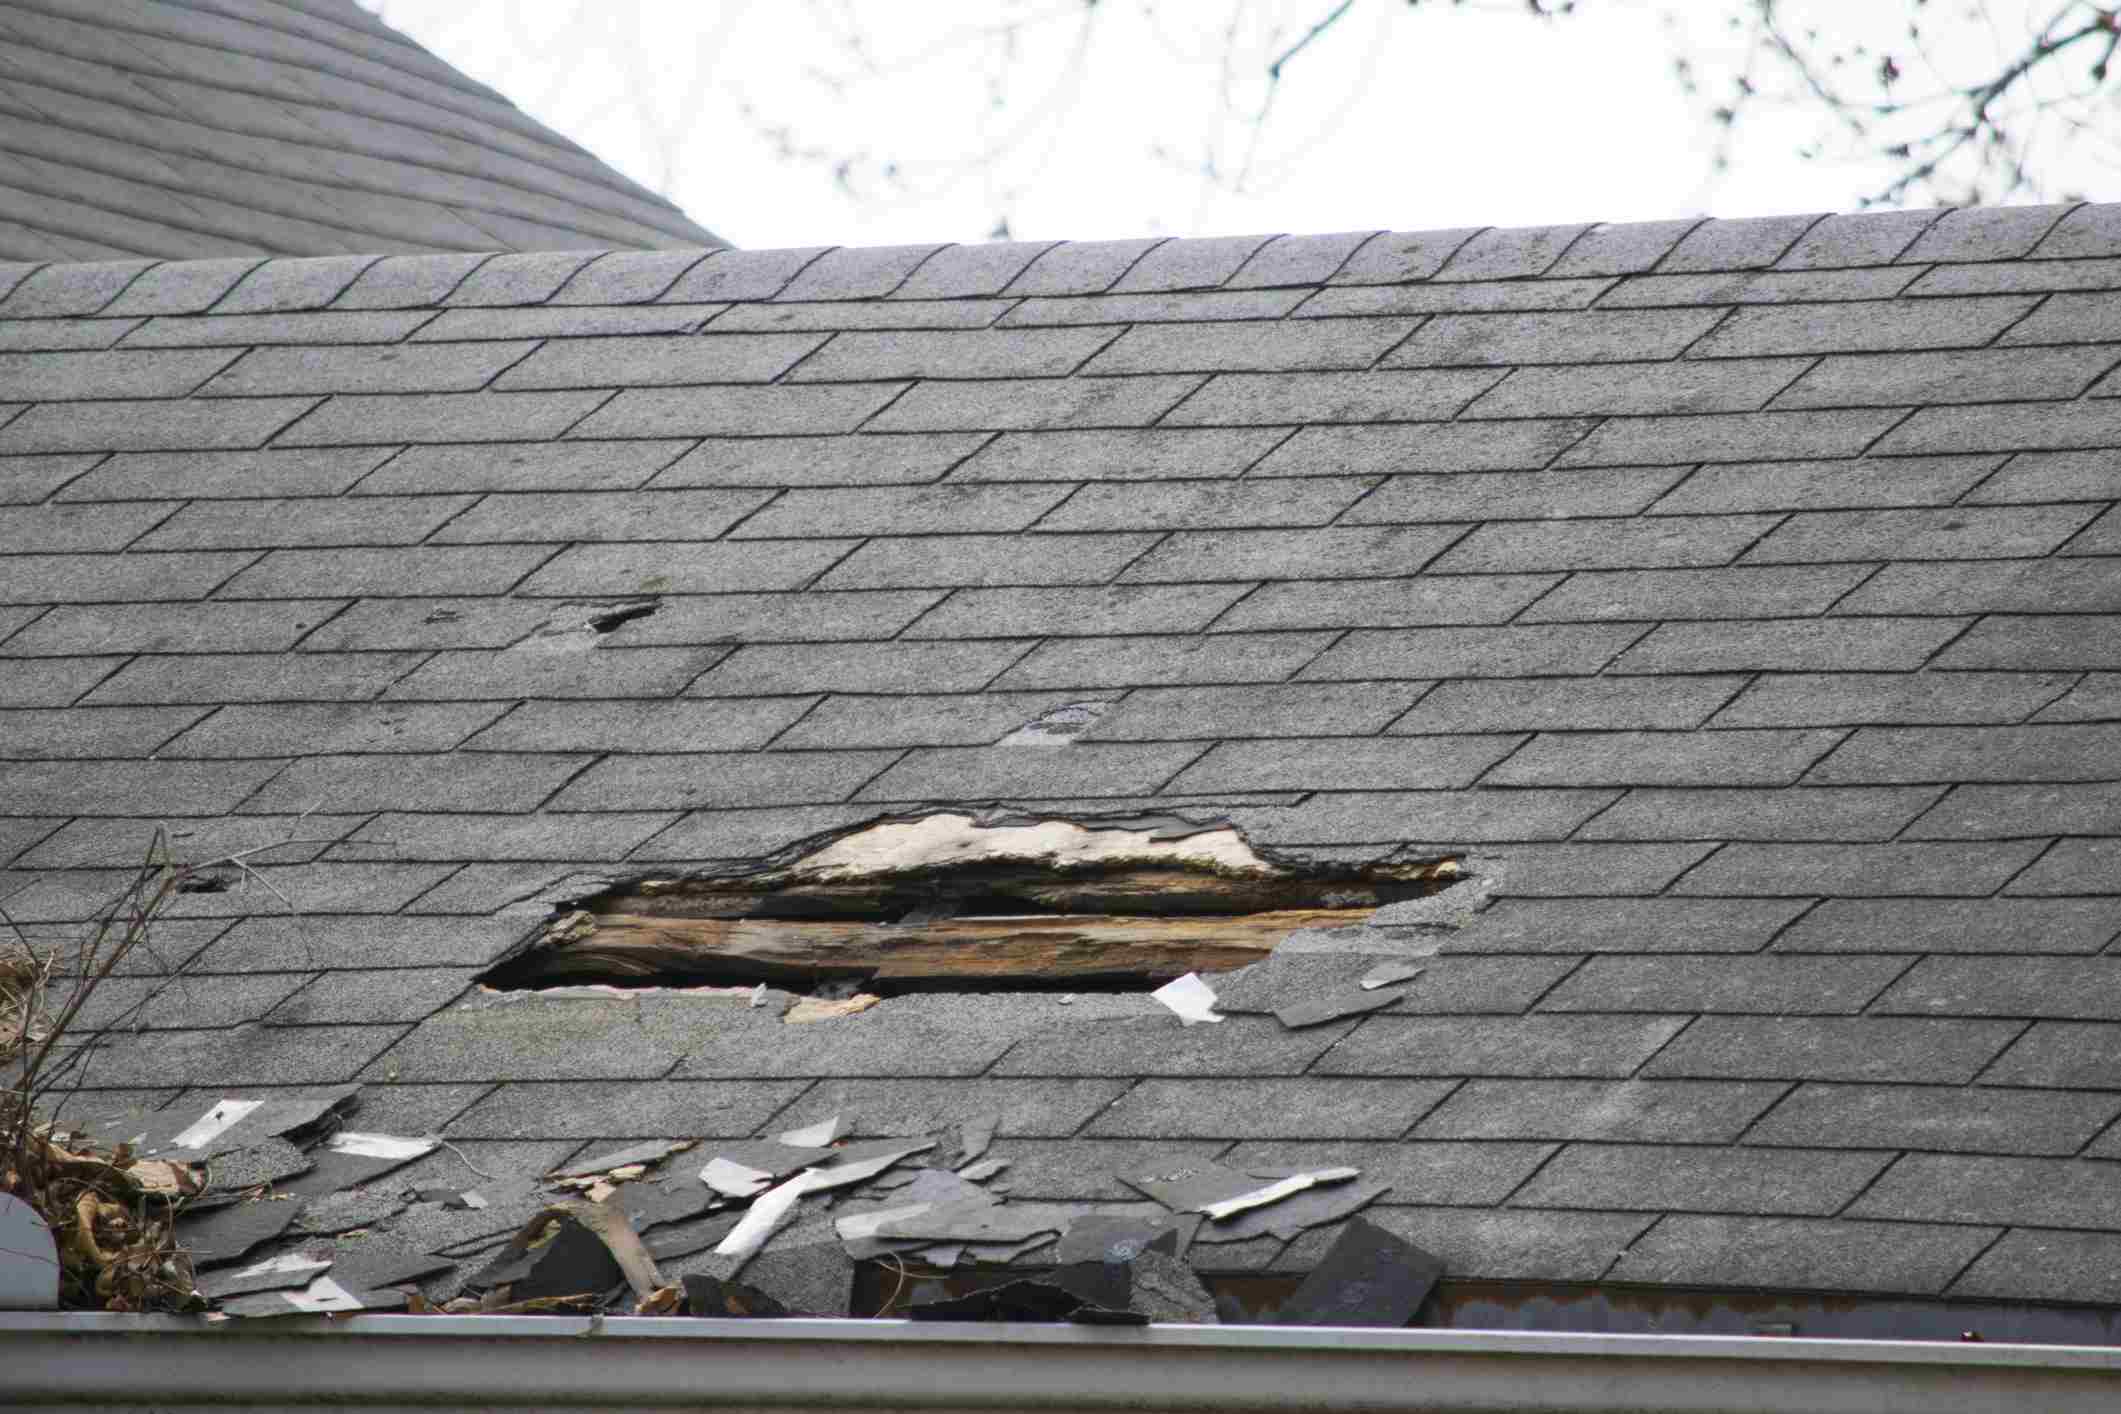  шиферной крыши, дефекты и способы их обнаружения, ремонтные работы